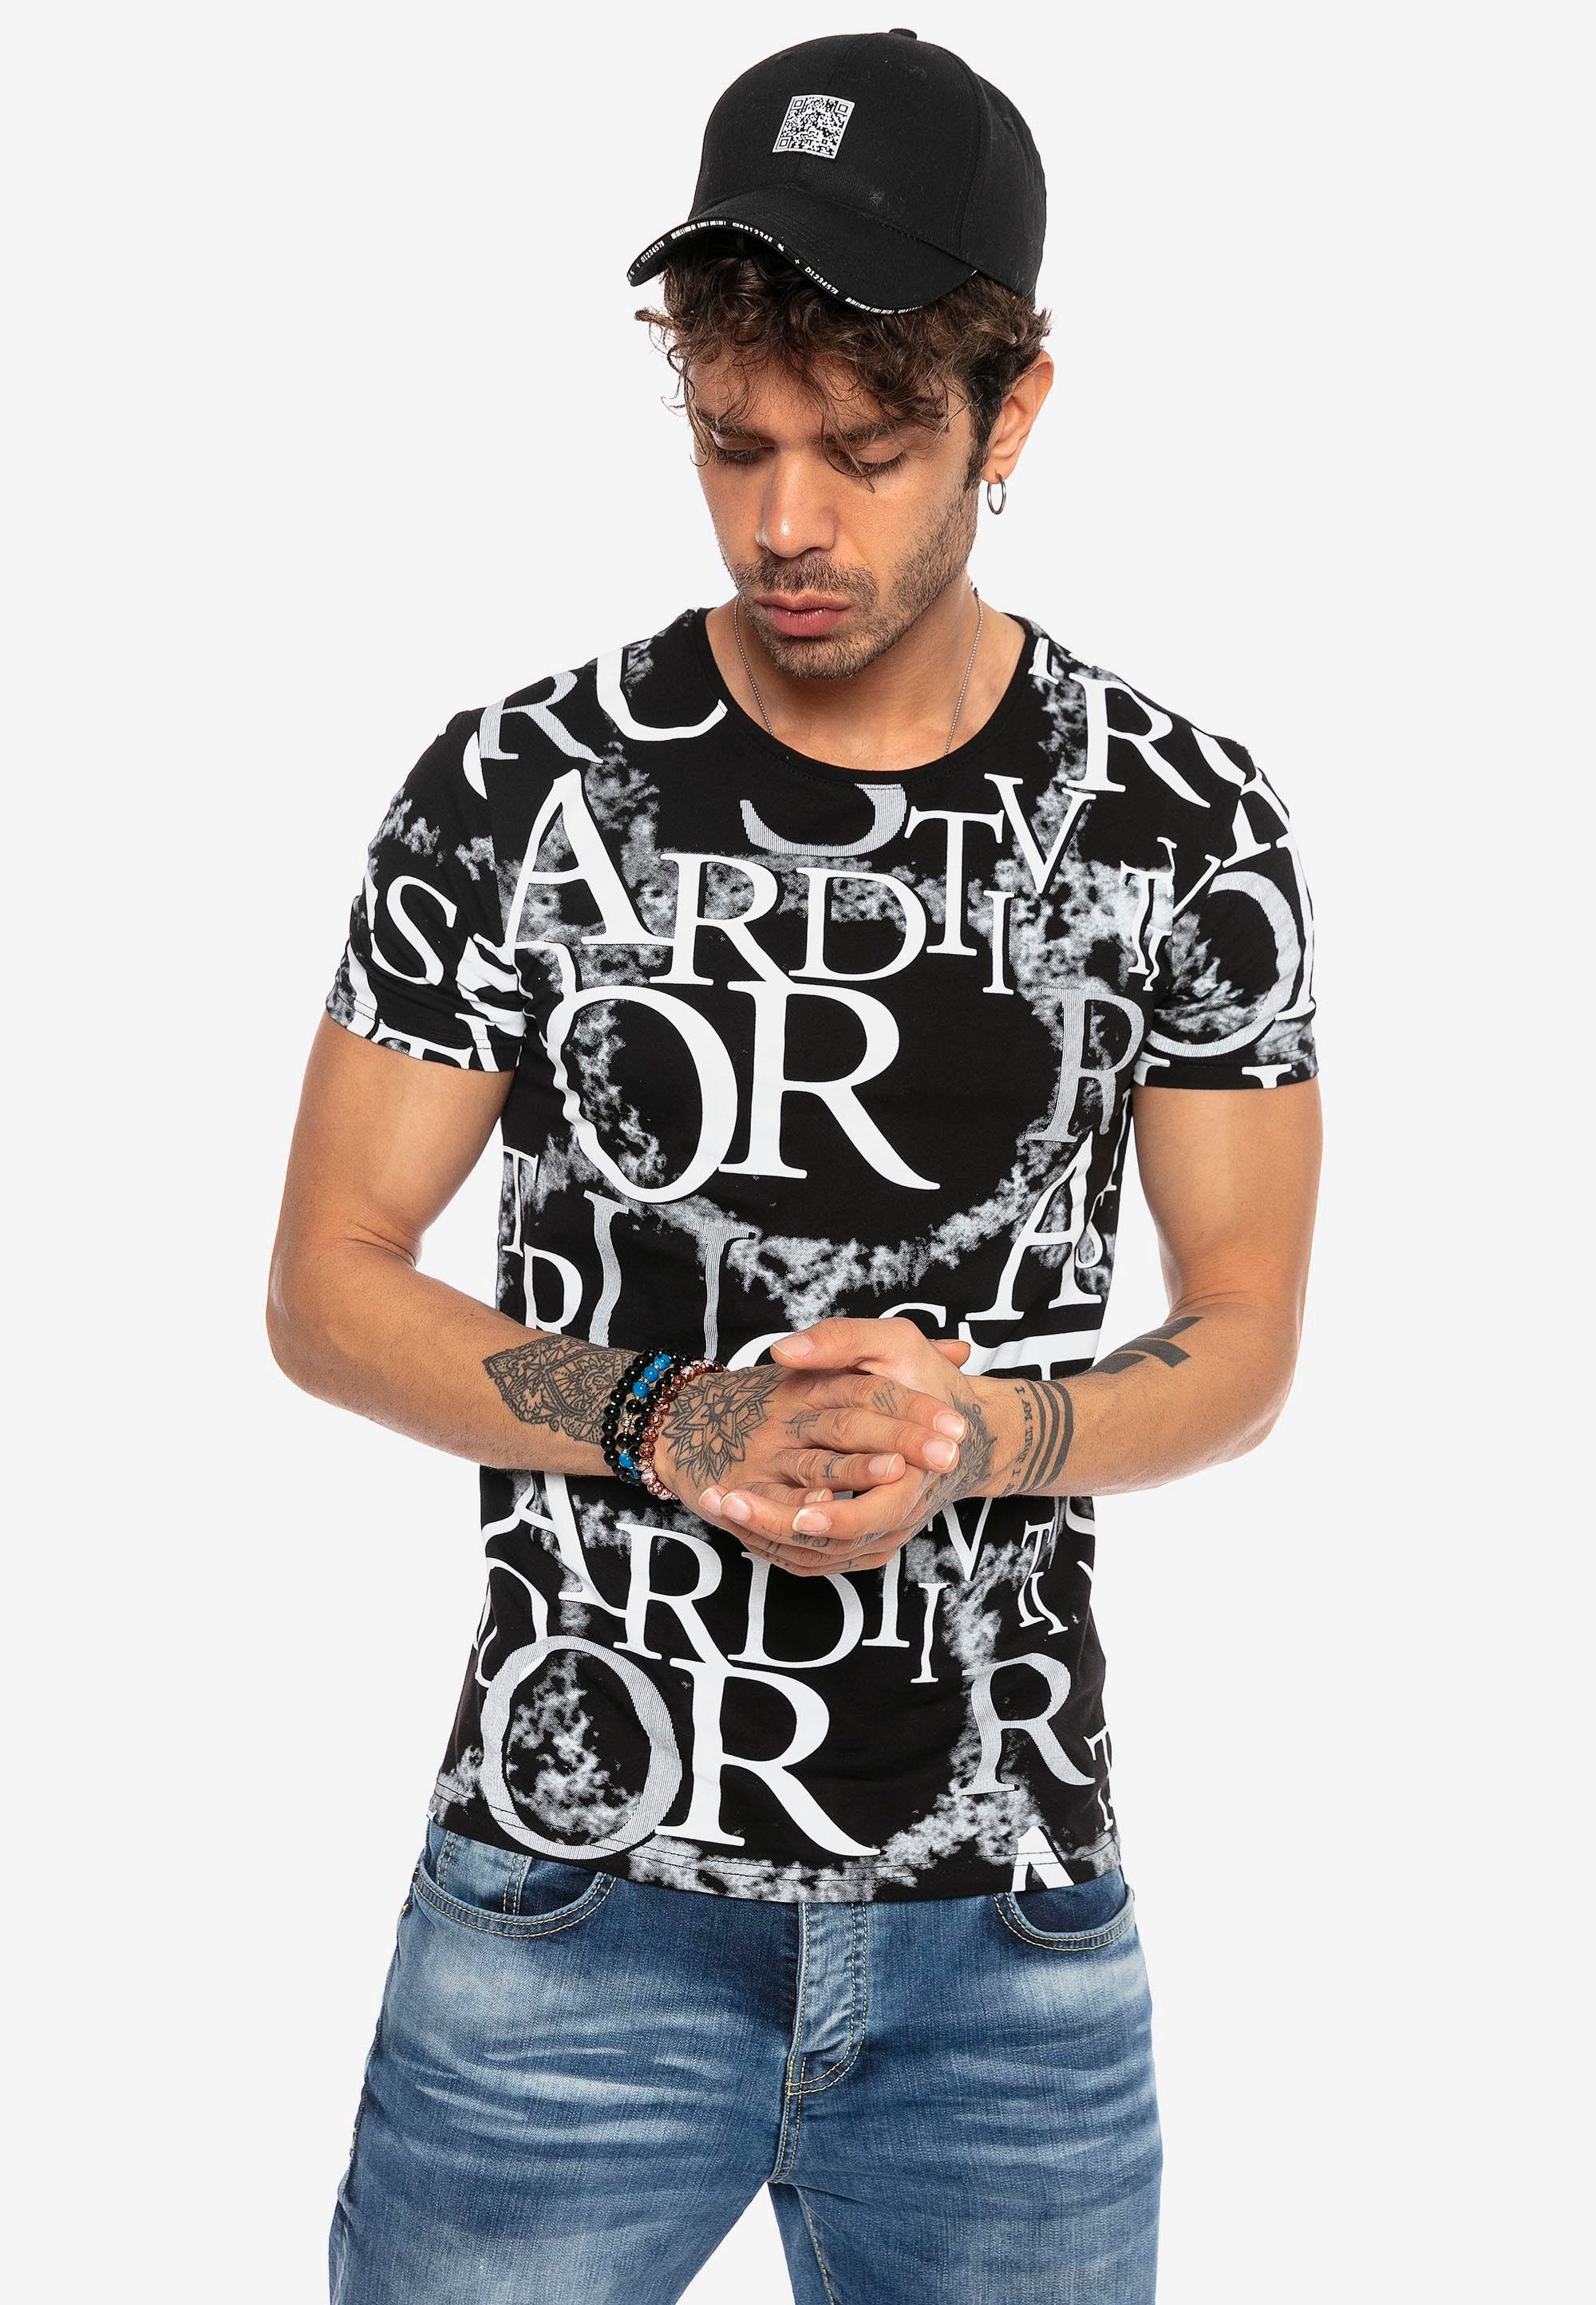 RedBridge T-Shirt Sterling Heights mit ausgefallenem Allover-Print schwarz-weiß